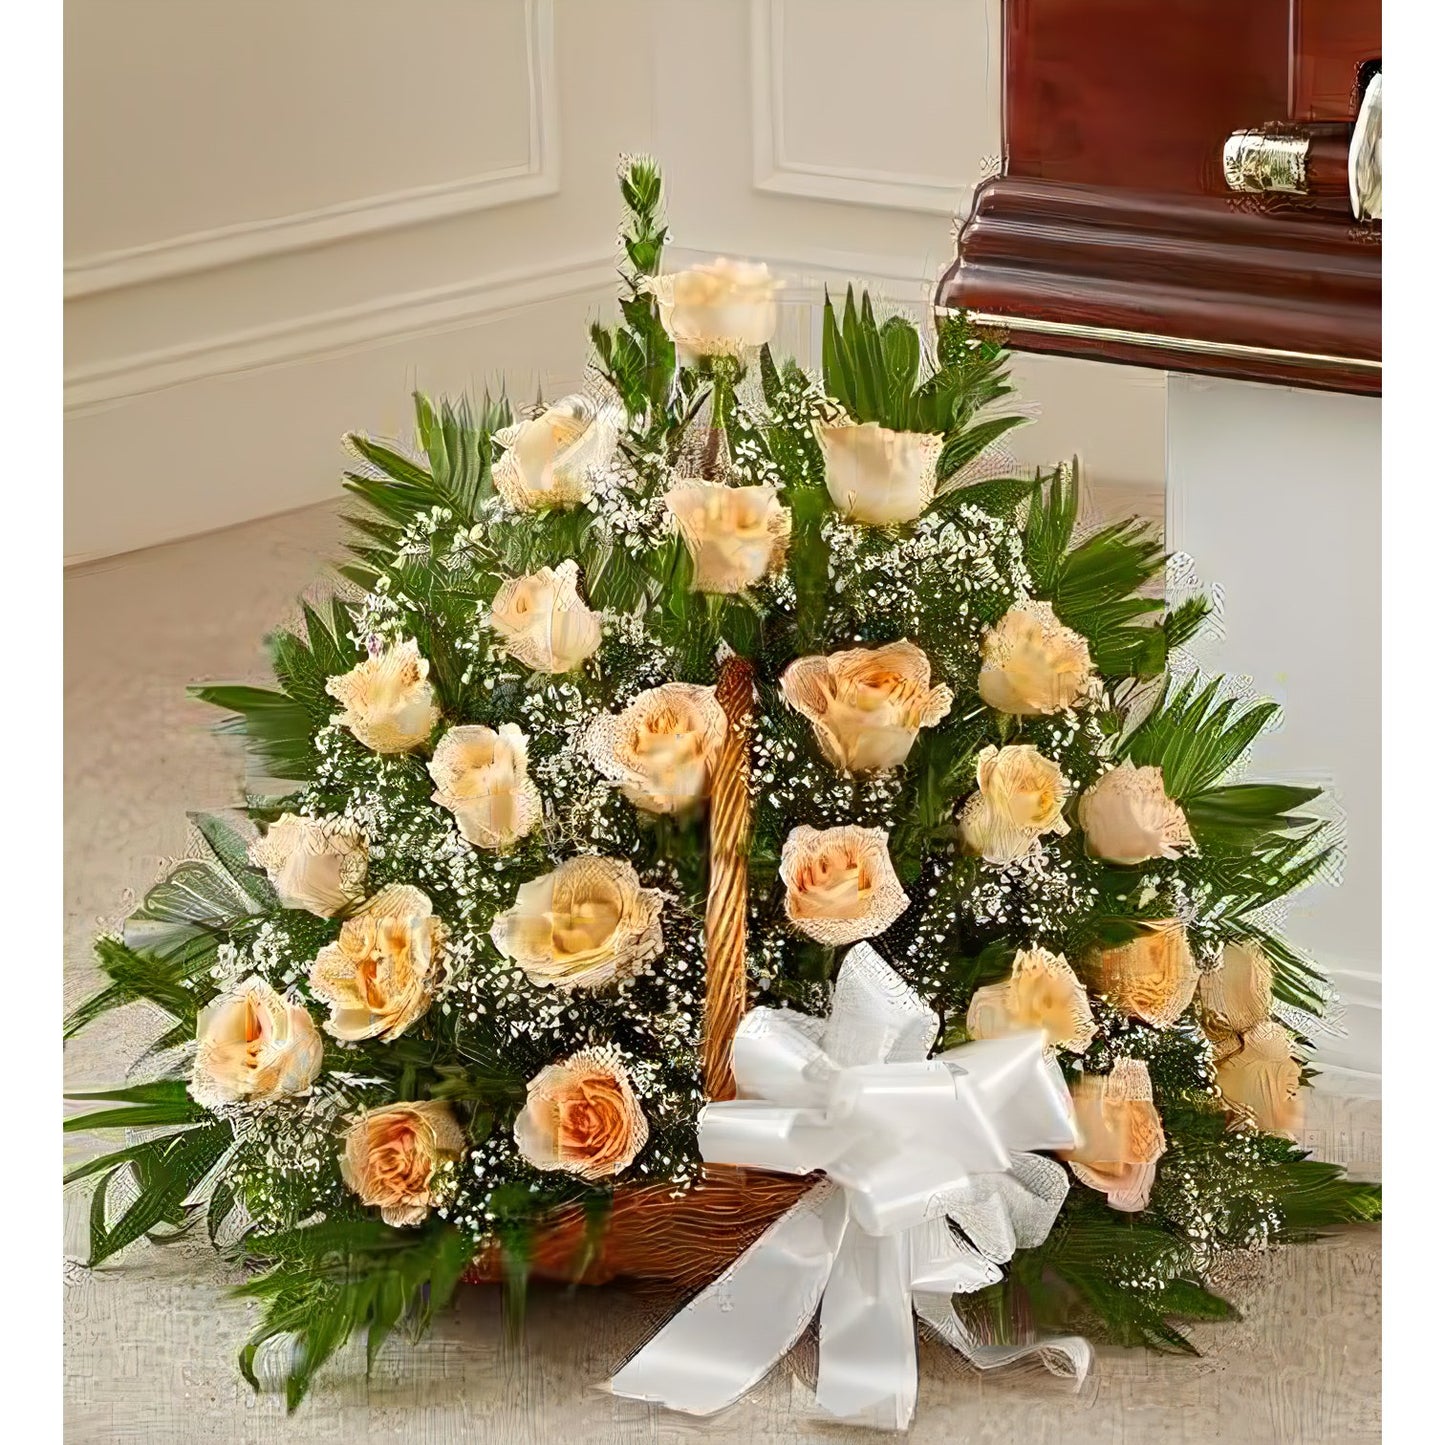 Sincerest Sympathy Fireside Basket - Floral_Arrangement - Flower Delivery NYC